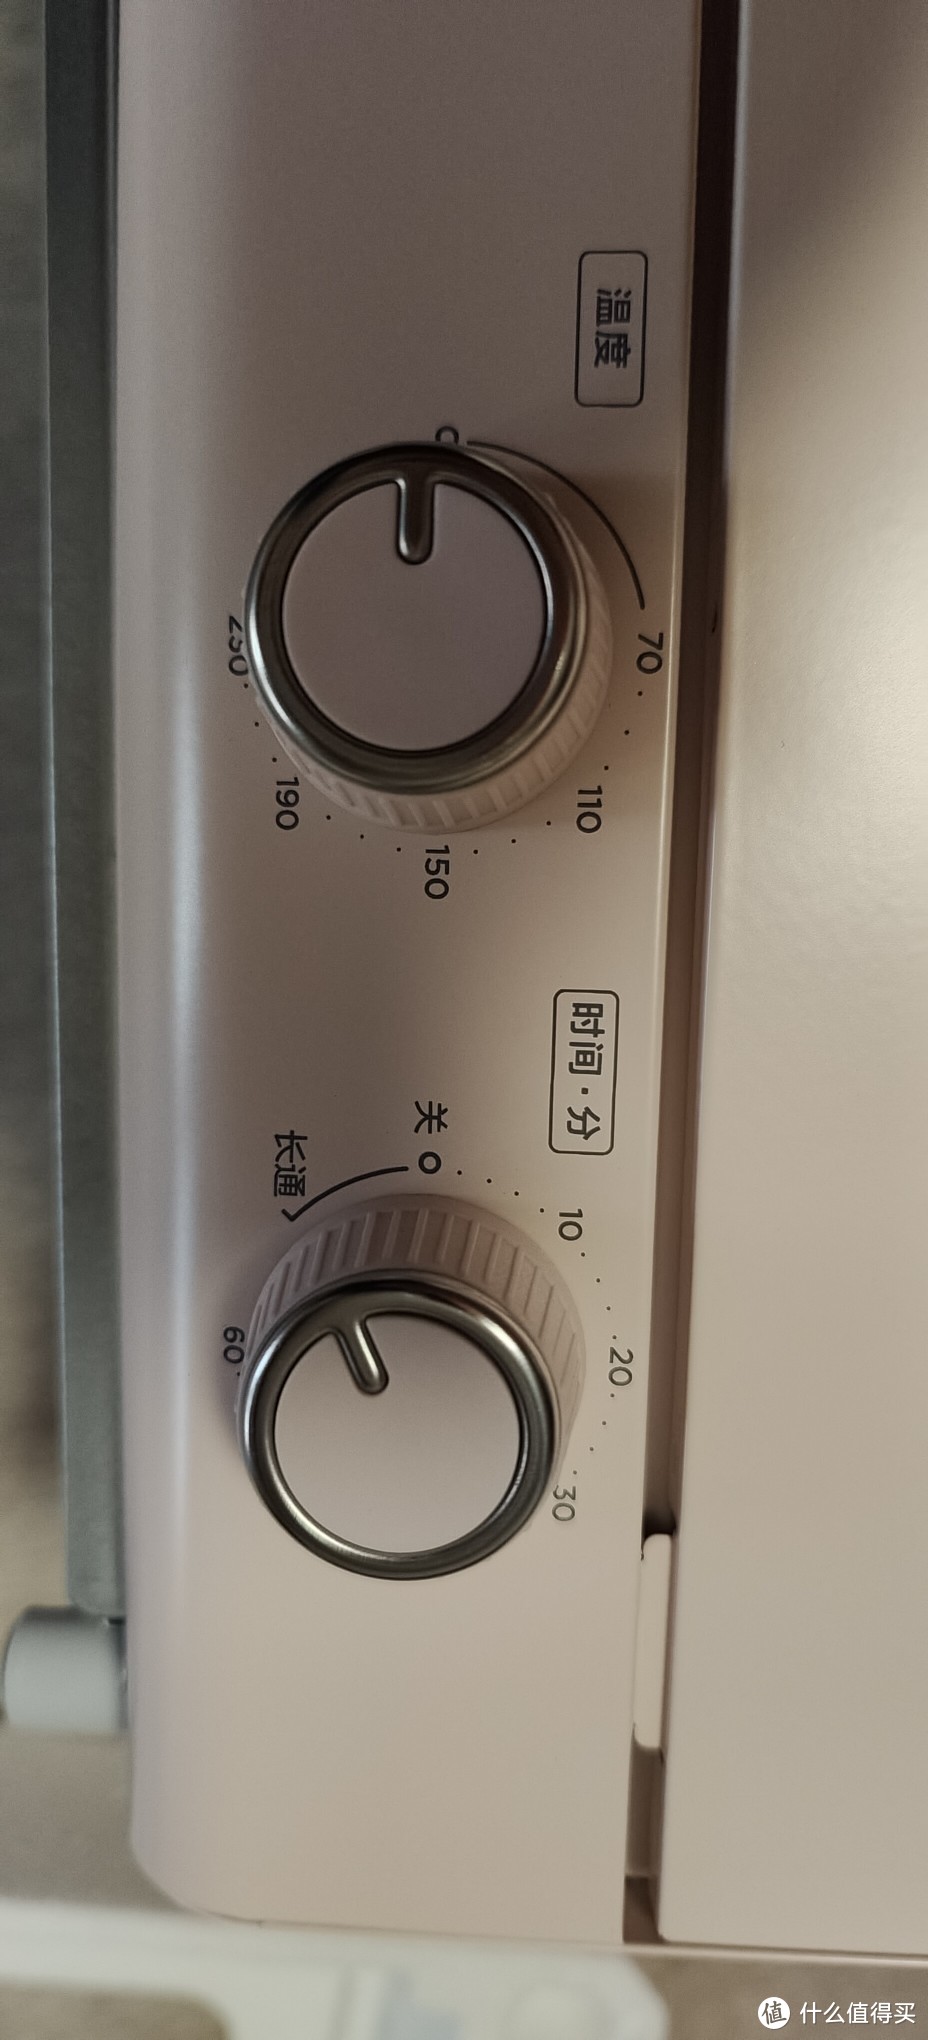 网红烤箱/美的Midea电烤箱（含说明书）家用台式迷你12L机械式操作精准控温烘焙烘烤PT12A0  樱花粉